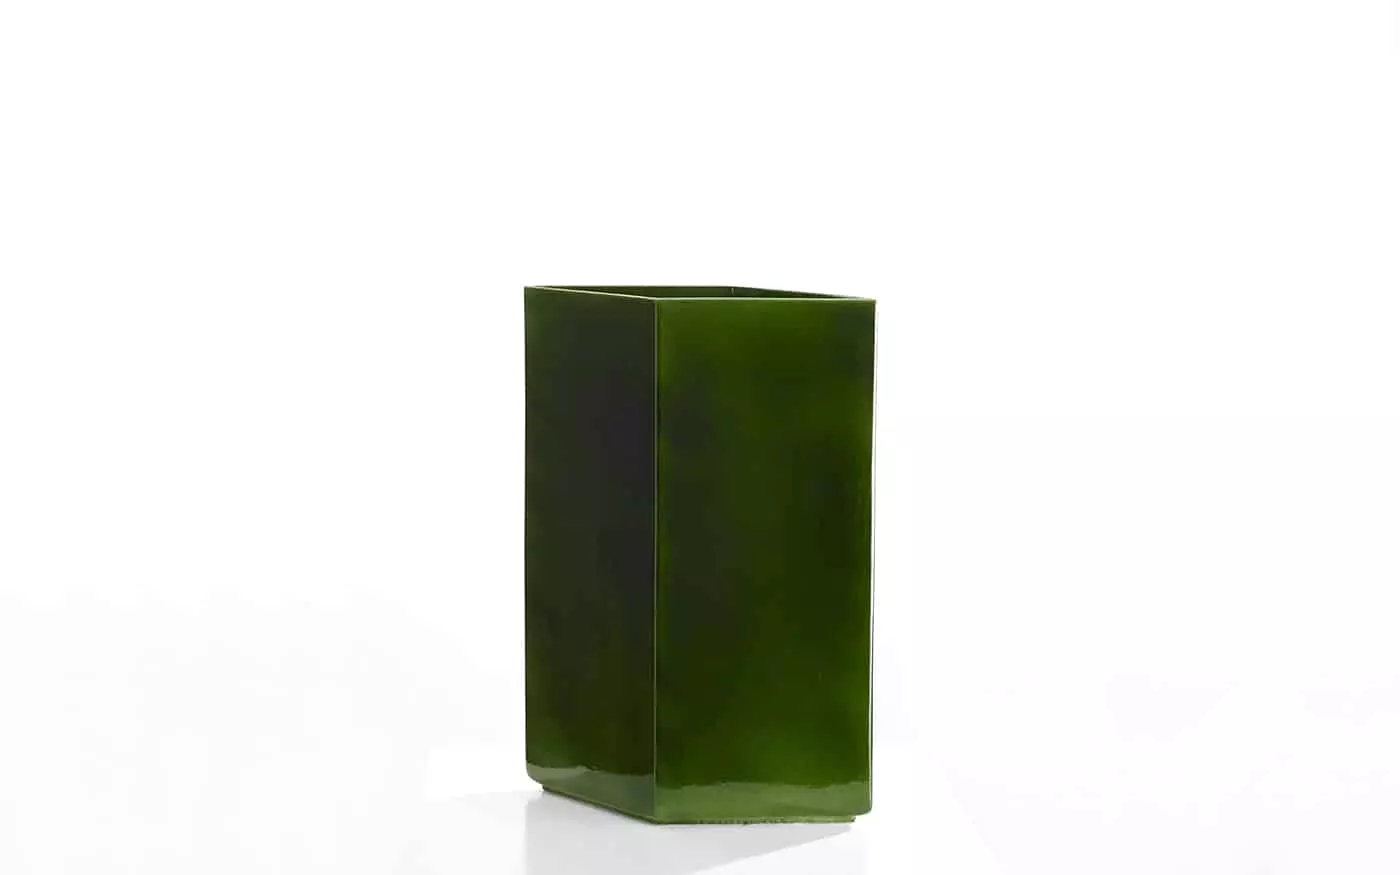 Vase Losange 67 green - Ronan & Erwan Bouroullec - Coffee table - Galerie kreo